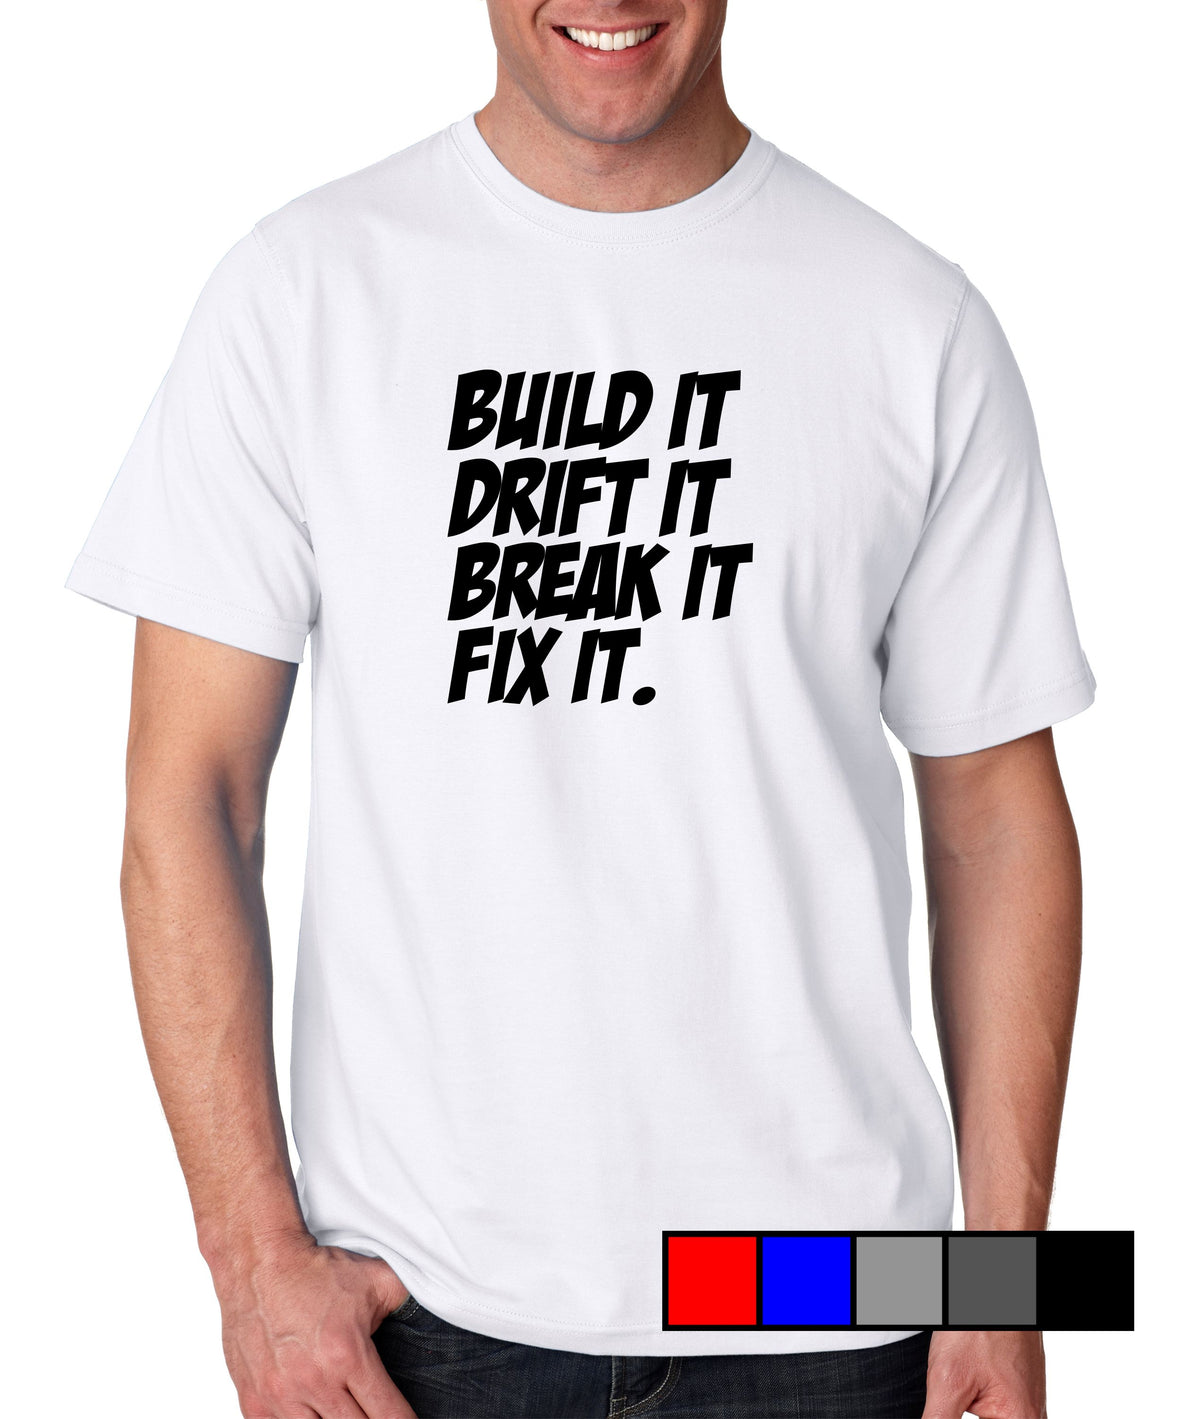 Build It, Drift It, Break It, Fix It. - Gear Driven Apparel